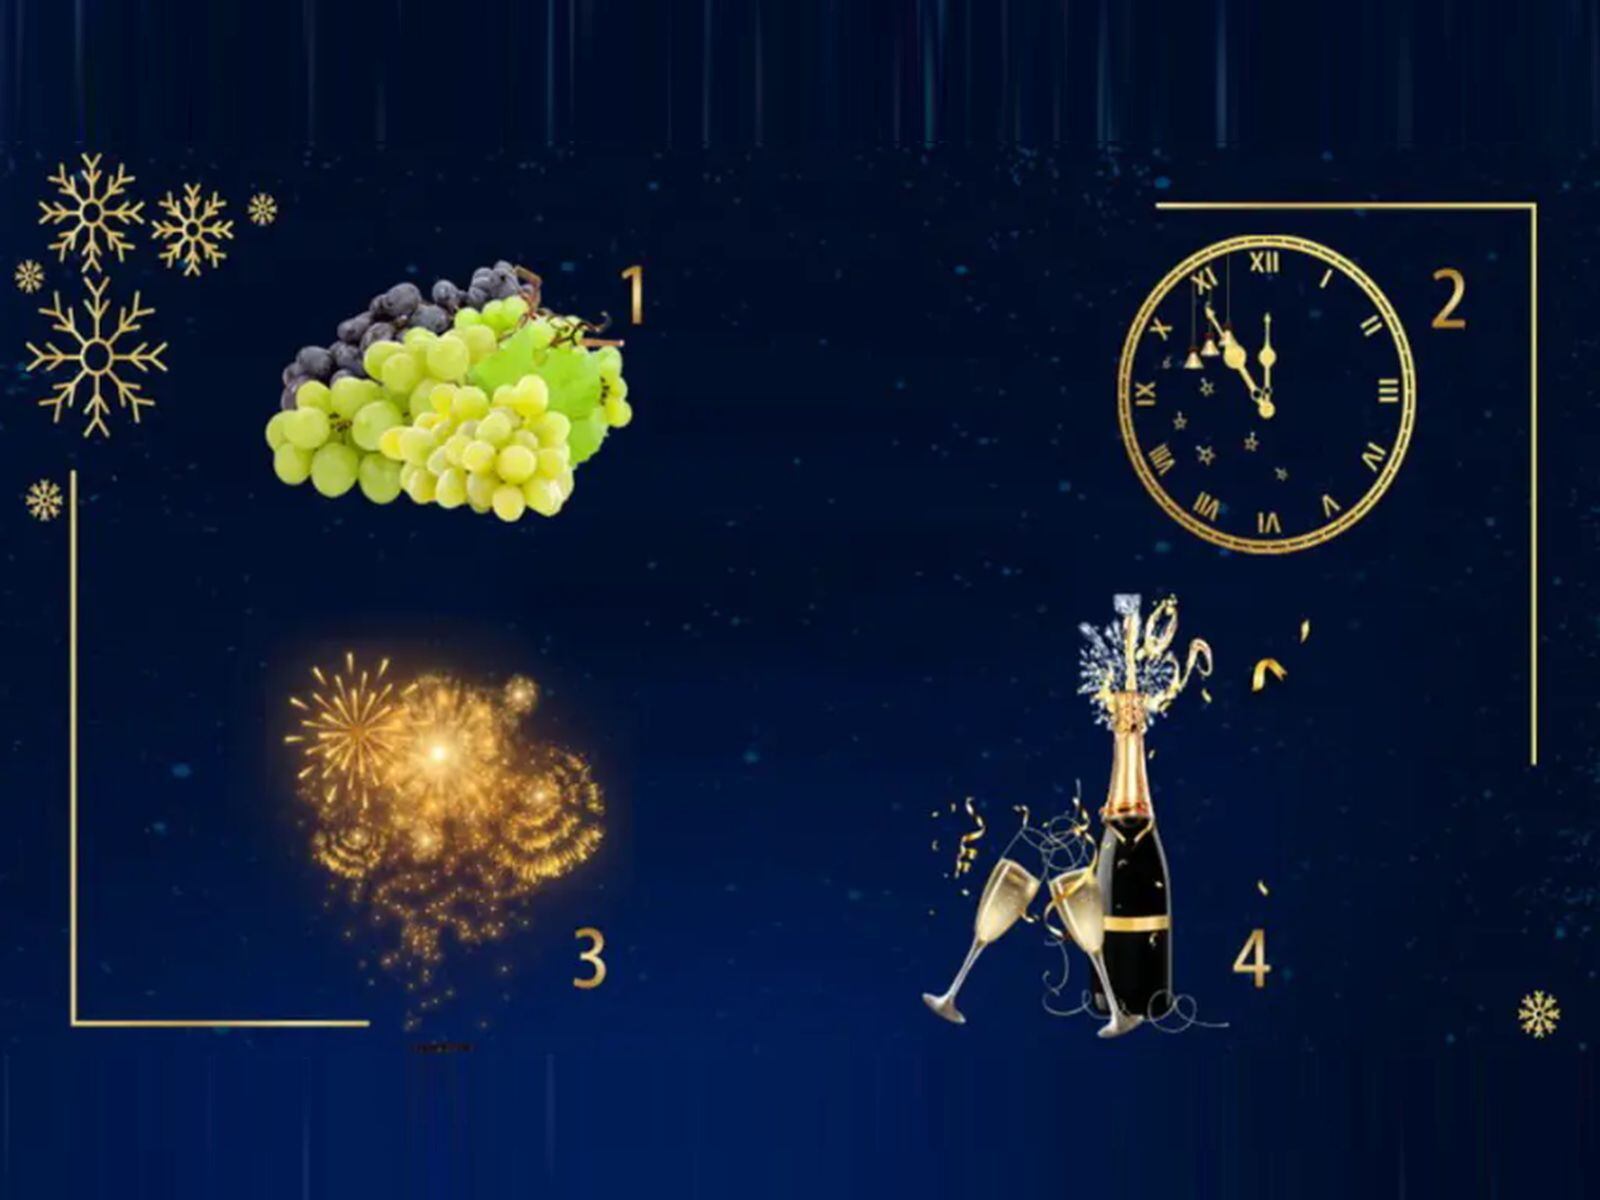 TEST VISUAL | Esta imagen te muestra cuatro símbolos de Año Nuevo. Indica cuál es tu favorito. (Foto: namastest.net)